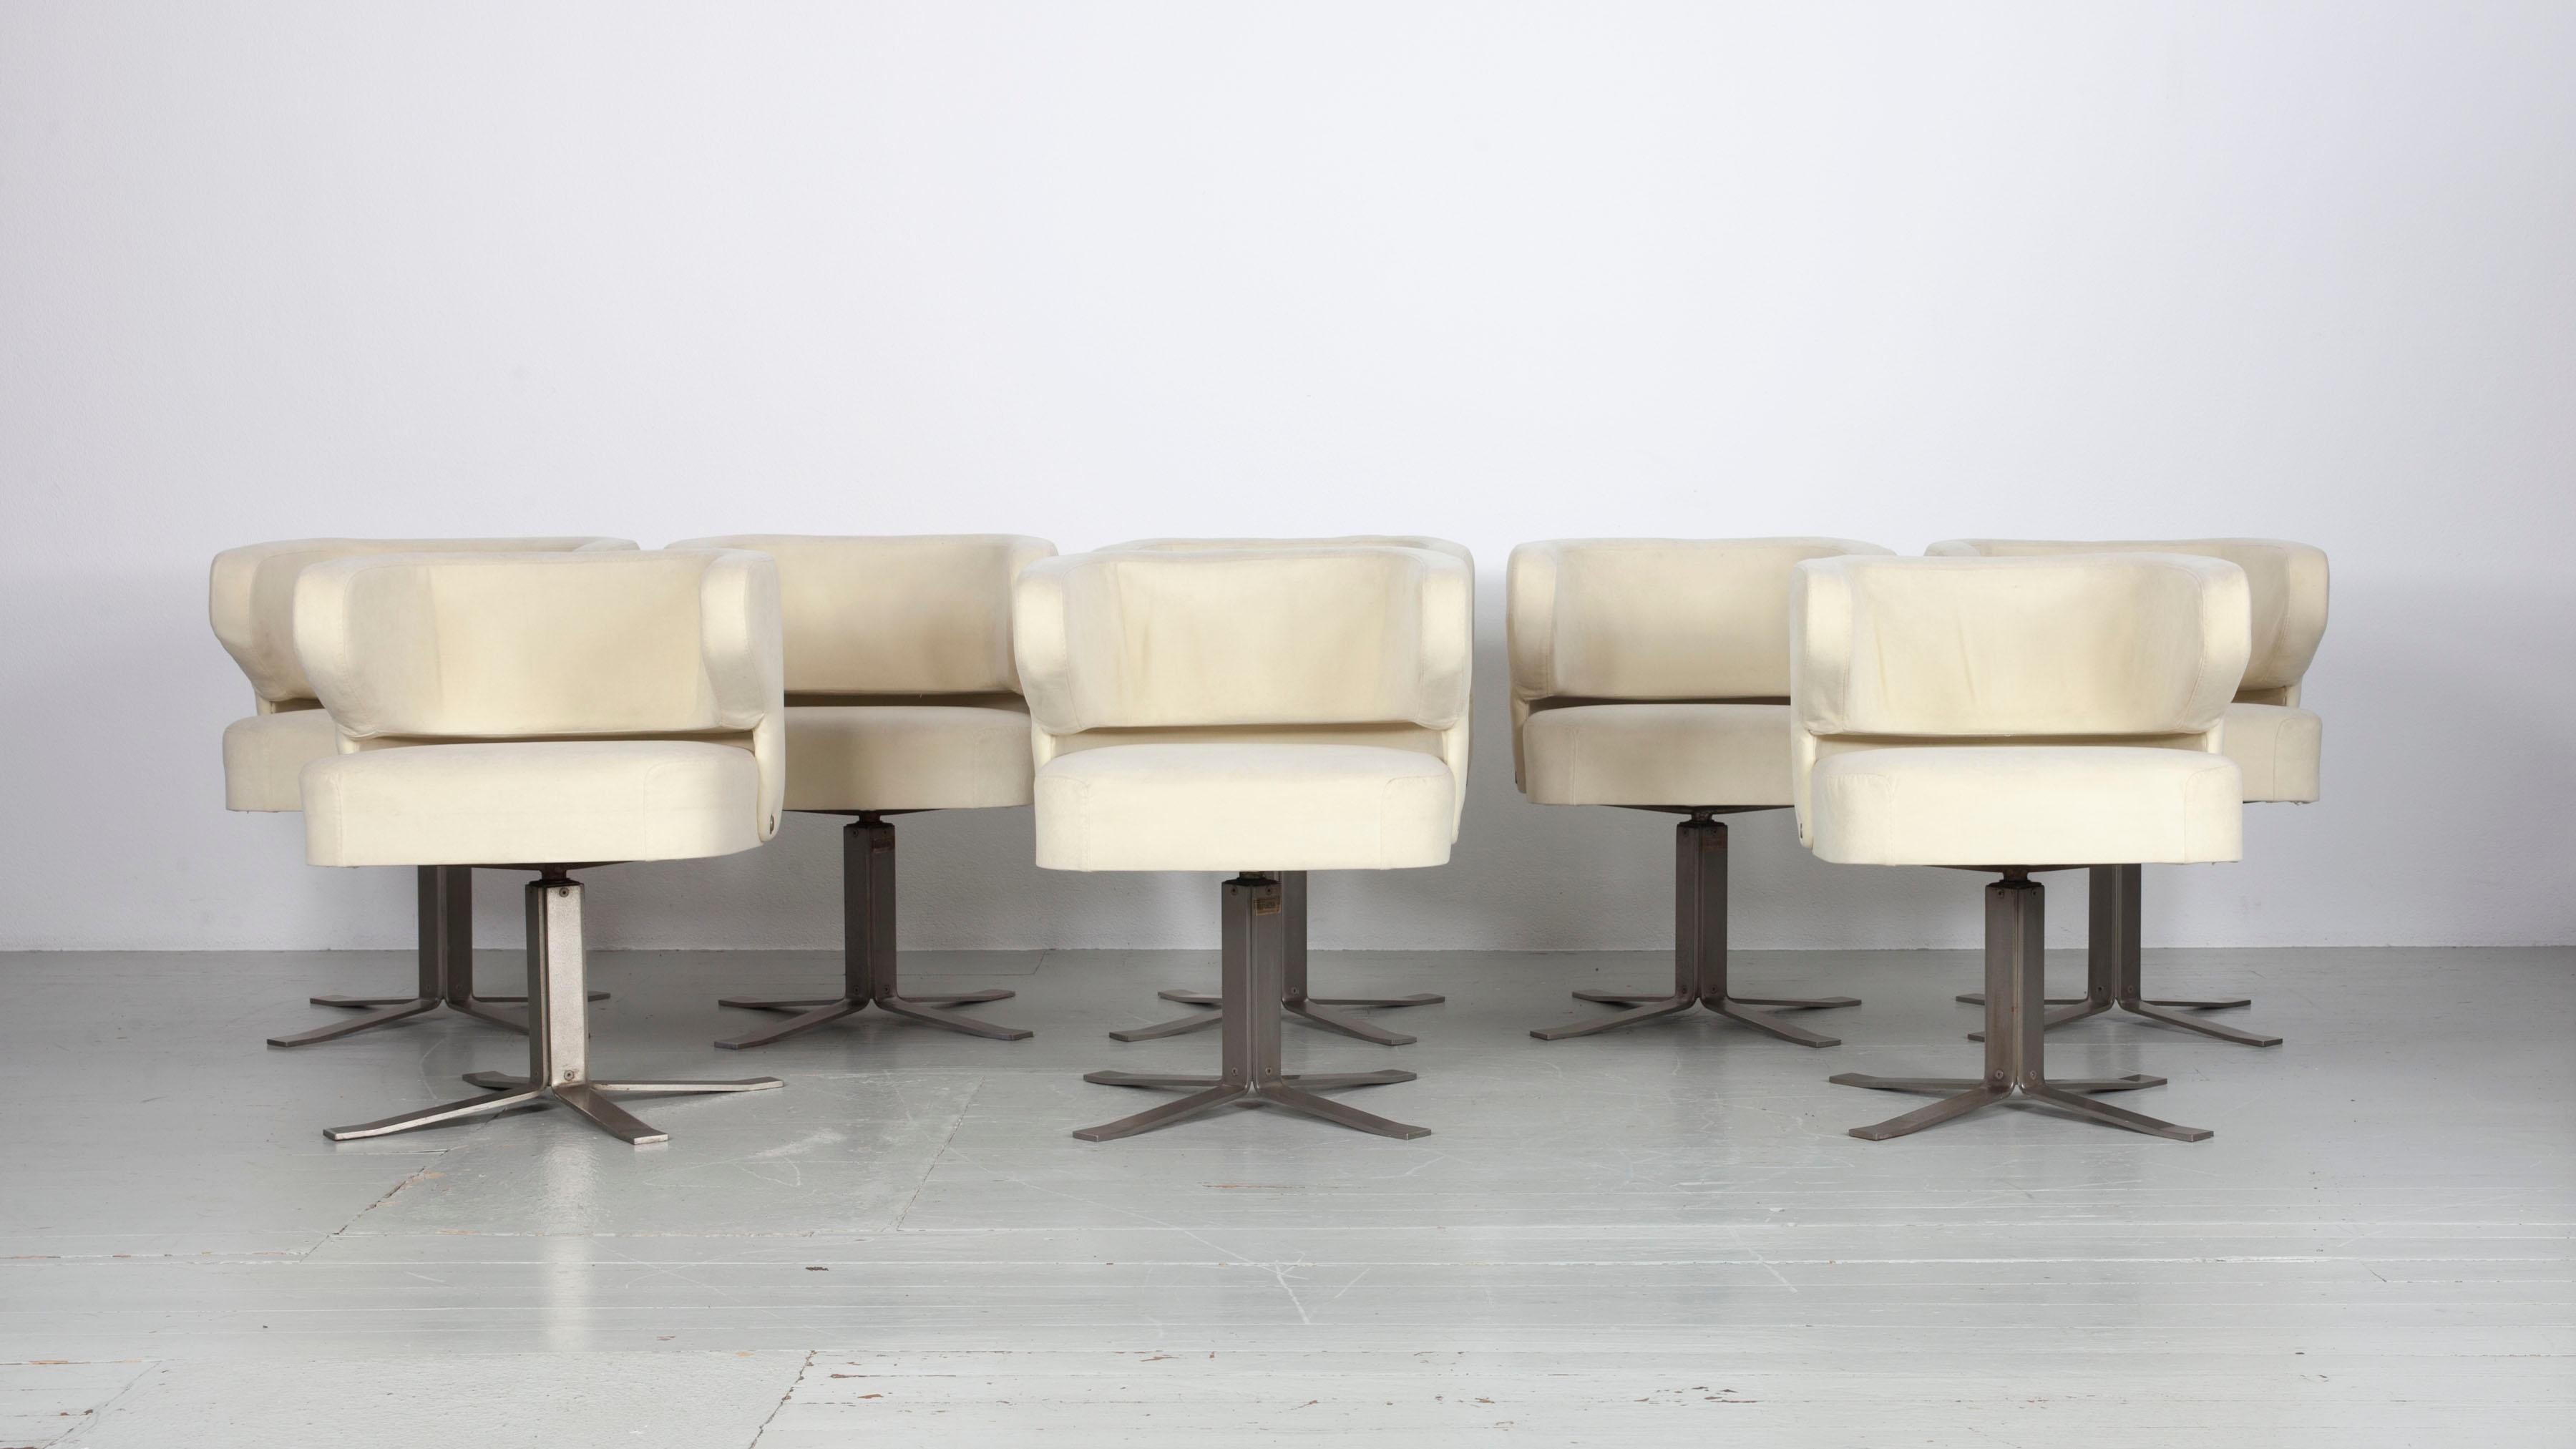 Dieser italienische Satz von acht Drehstühlen stammt aus den 70er Jahren, es ist das Modell Poney. Die Stühle wurden von Giulio Moscatelli entworfen und von Formanova hergestellt. Die Stühle sind mit beigem Stoff bezogen, der bis auf ein paar